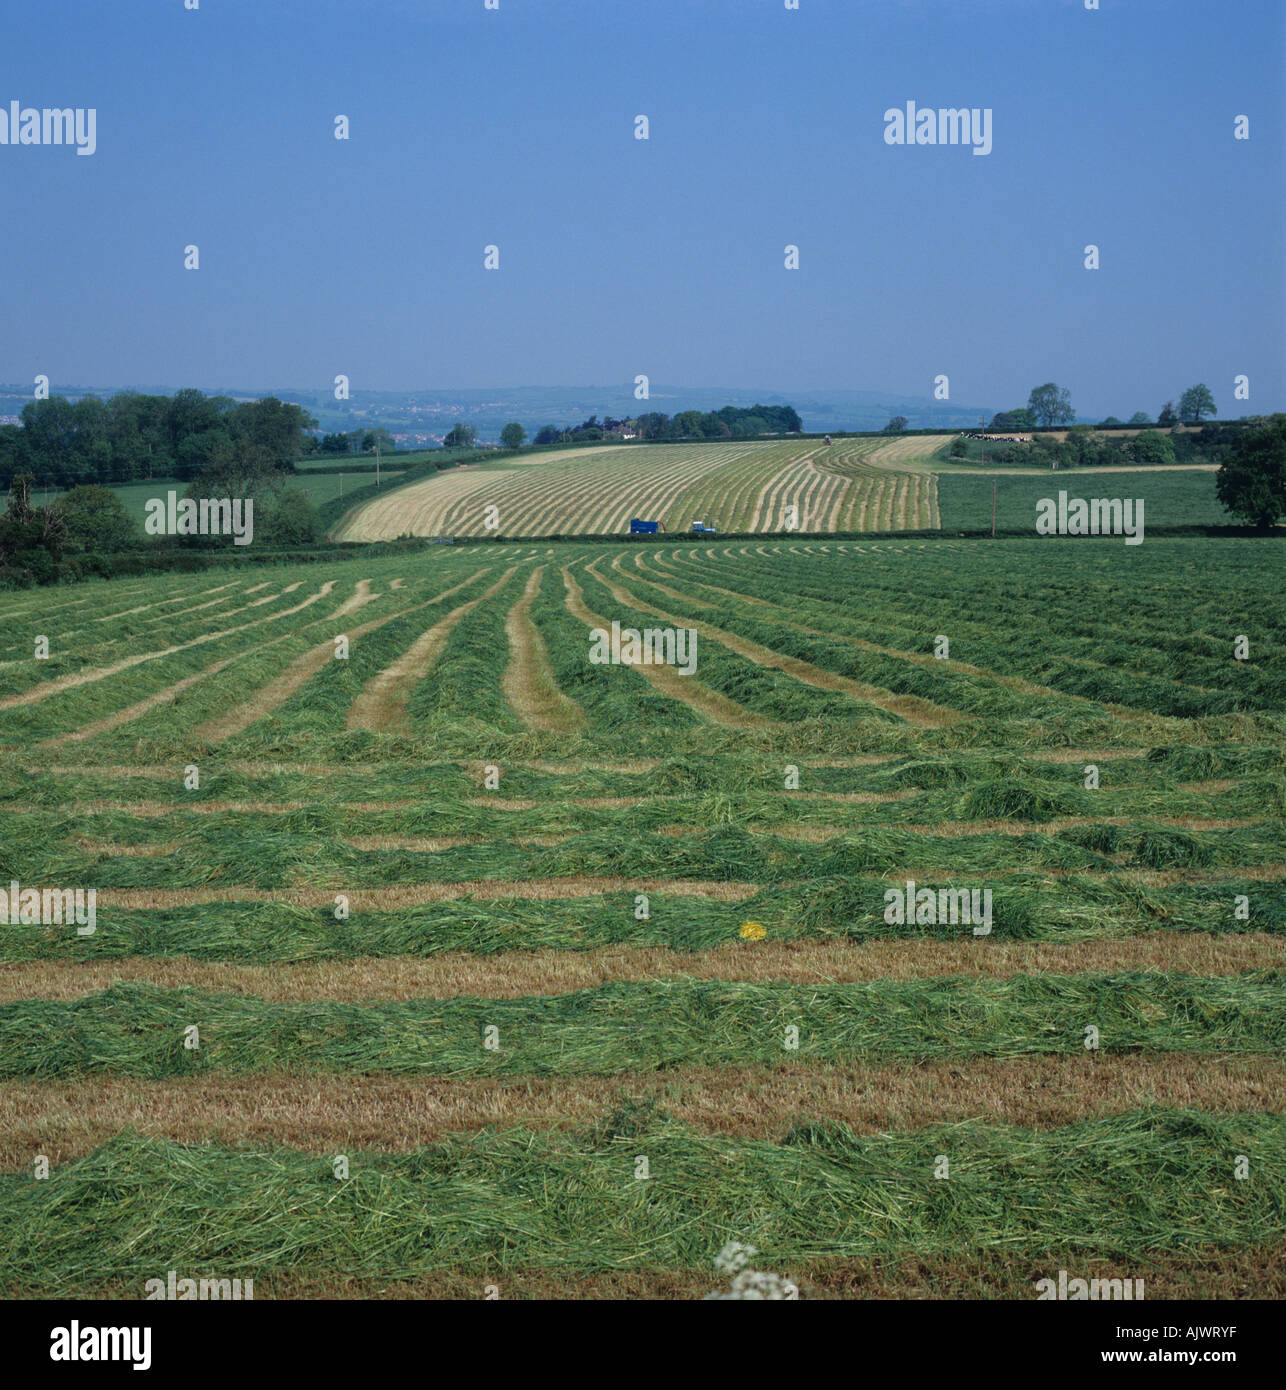 Ray-grass anglais pour l'ensilage de l'herbe tondue leys couché dans des lignes dans plusieurs domaines Banque D'Images